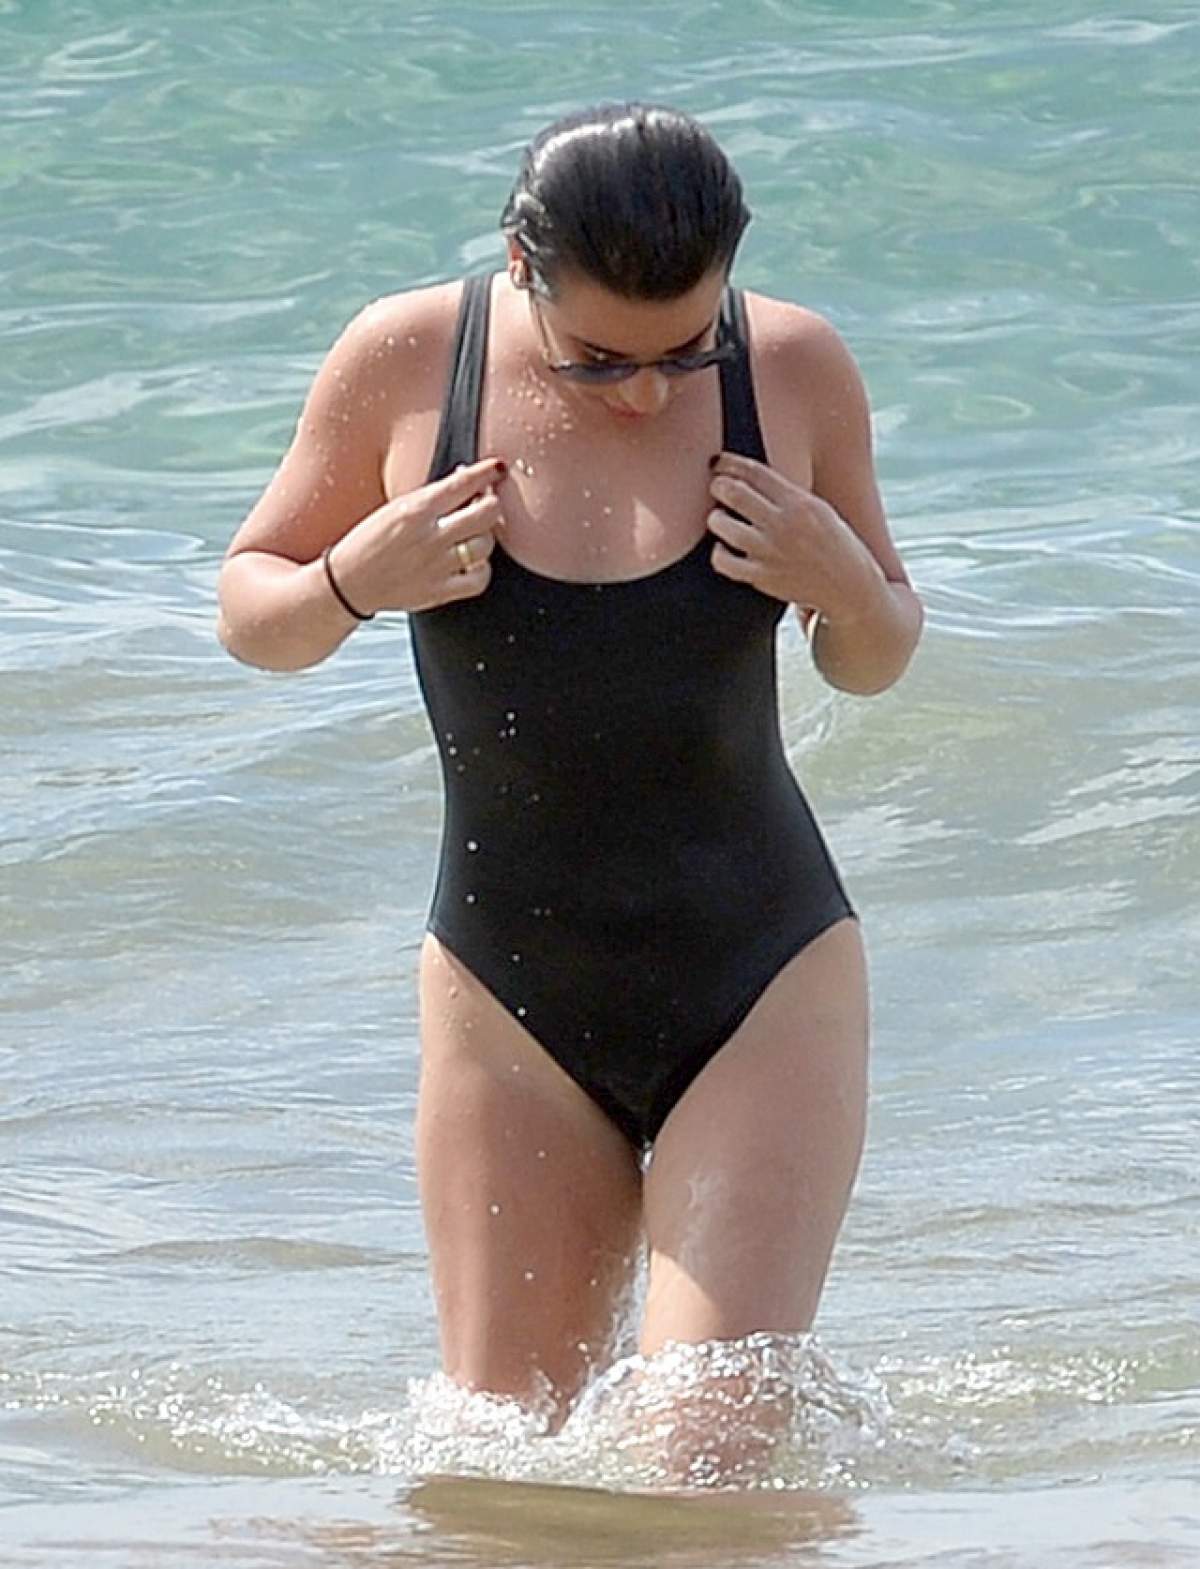 FOTO / O celebră actriță a ieșit din apă și s-a făcut de râs! Ce a observat toată lumea la picioarele ei